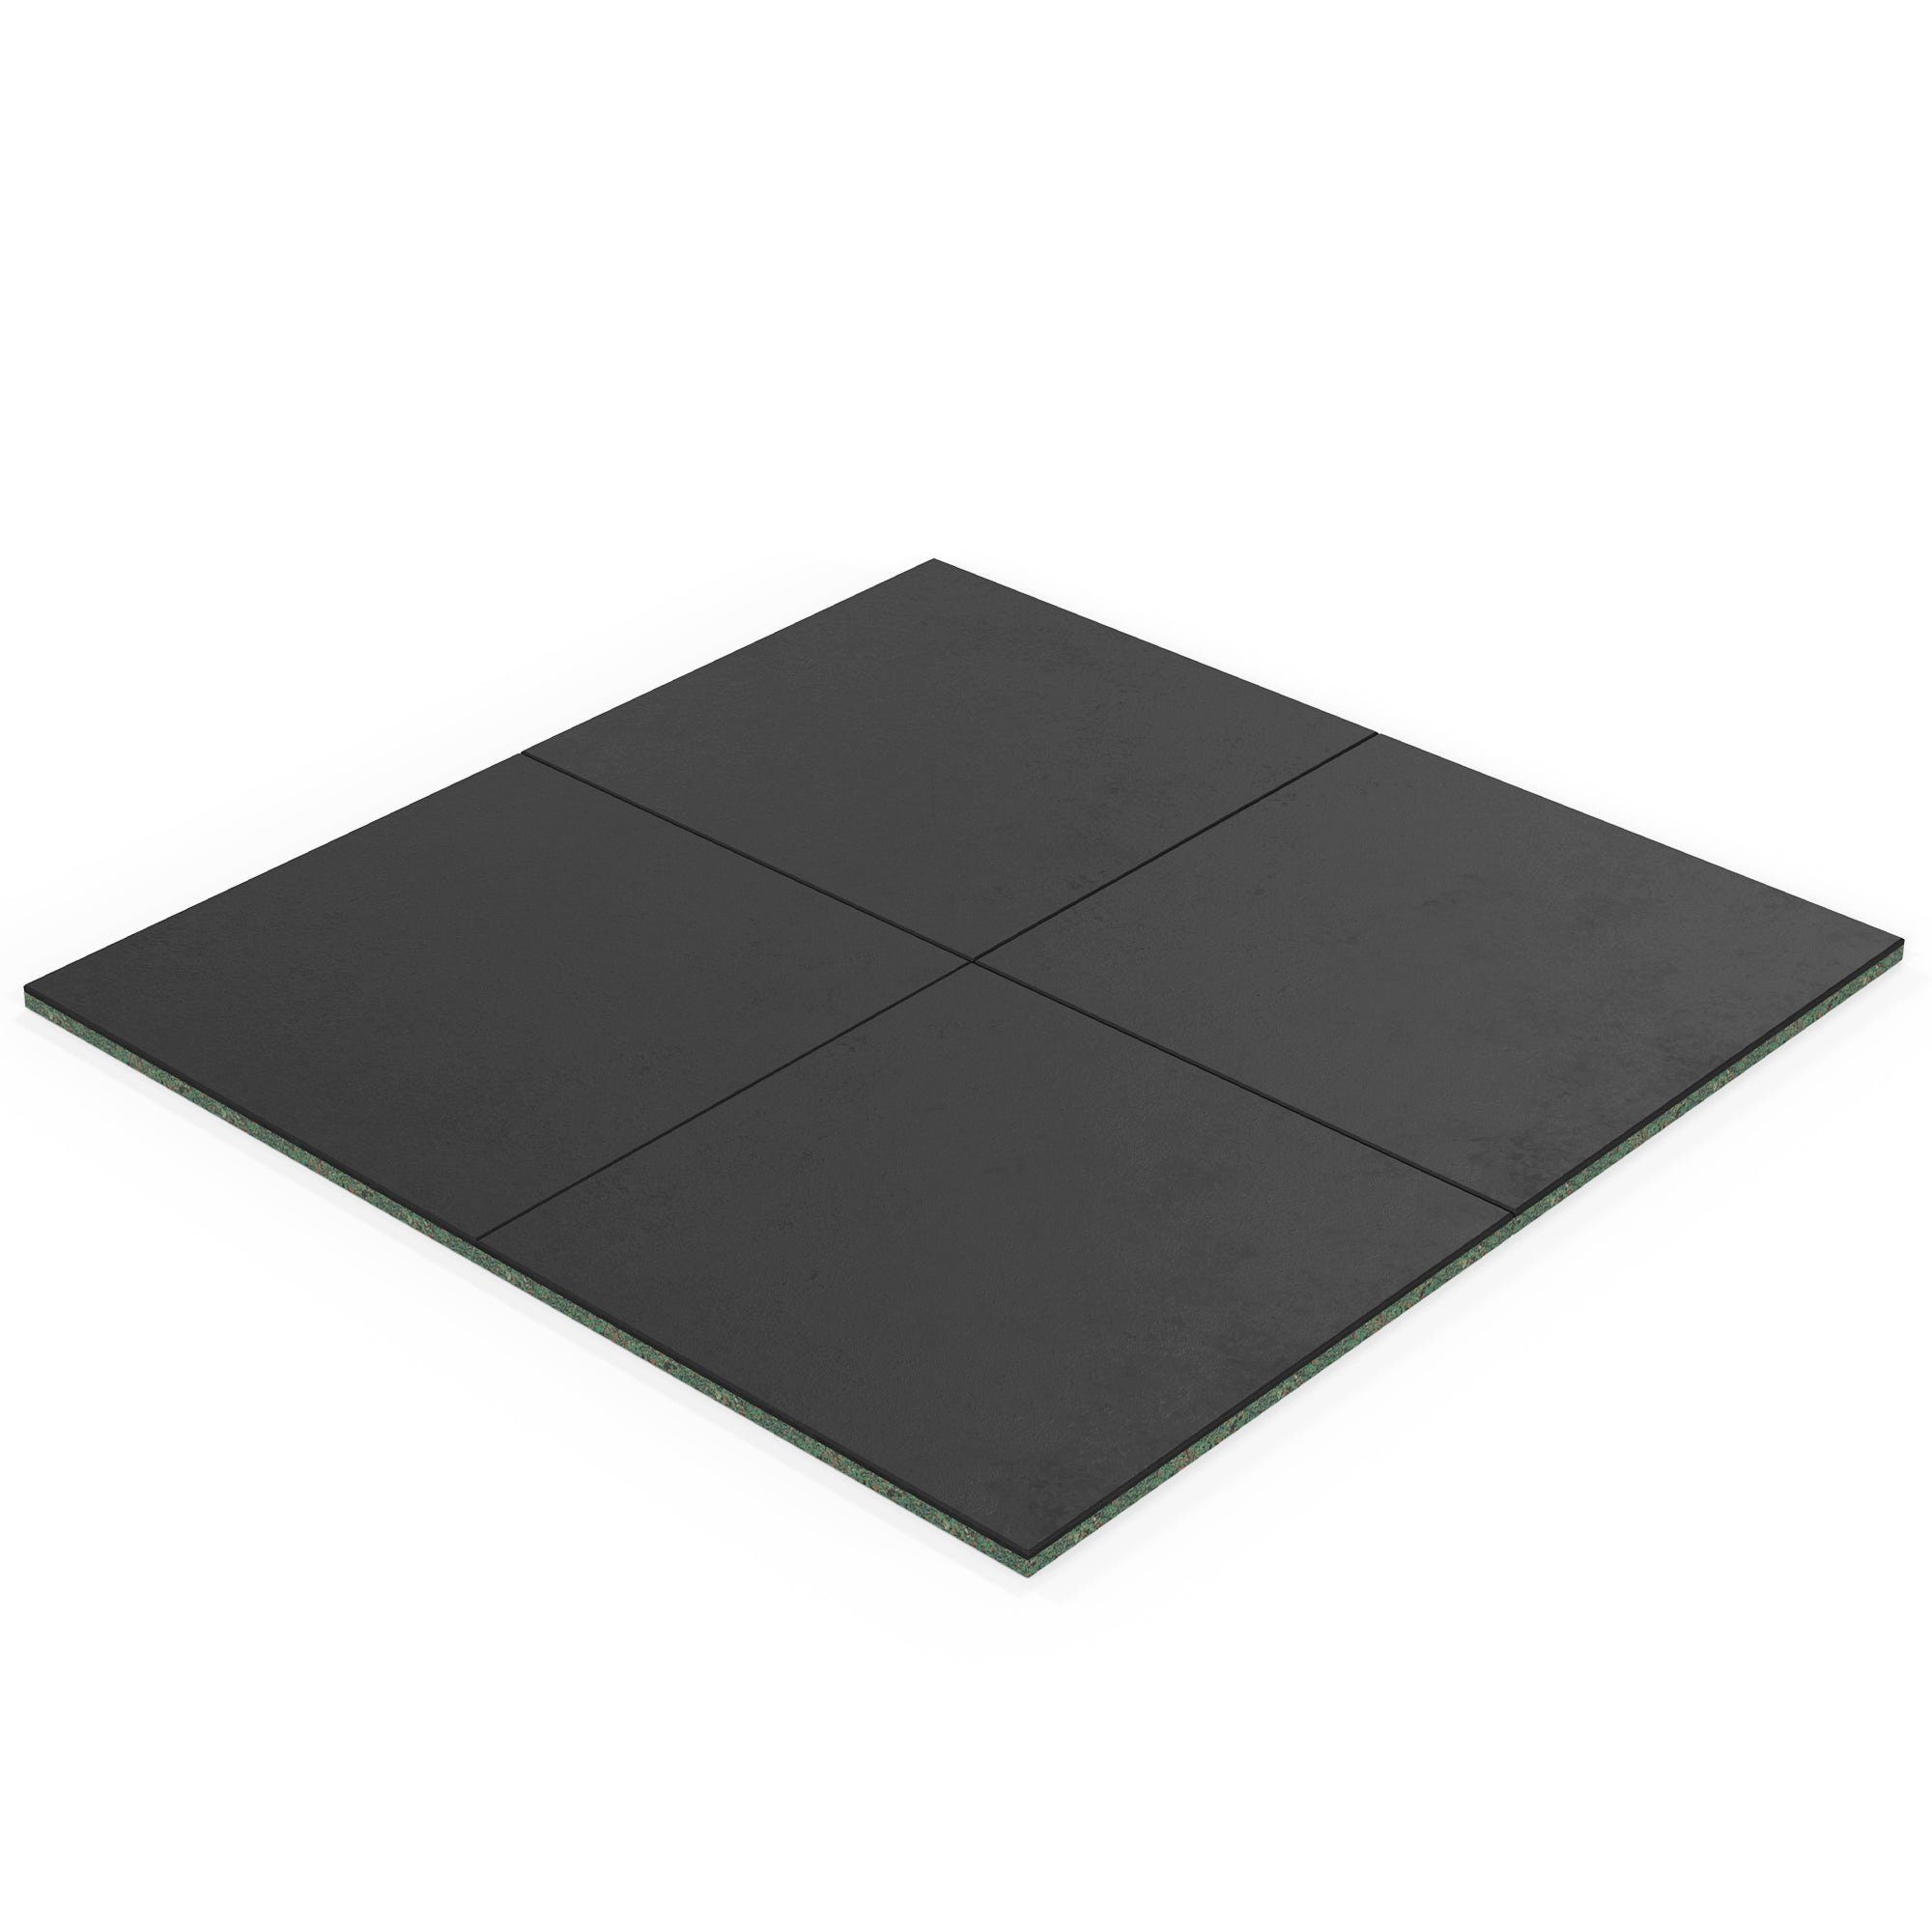 ATLETICA Bodenmatte 8m2 SolidProtect Bodenschutzmatten 20 mm, Keltan EPDM Material